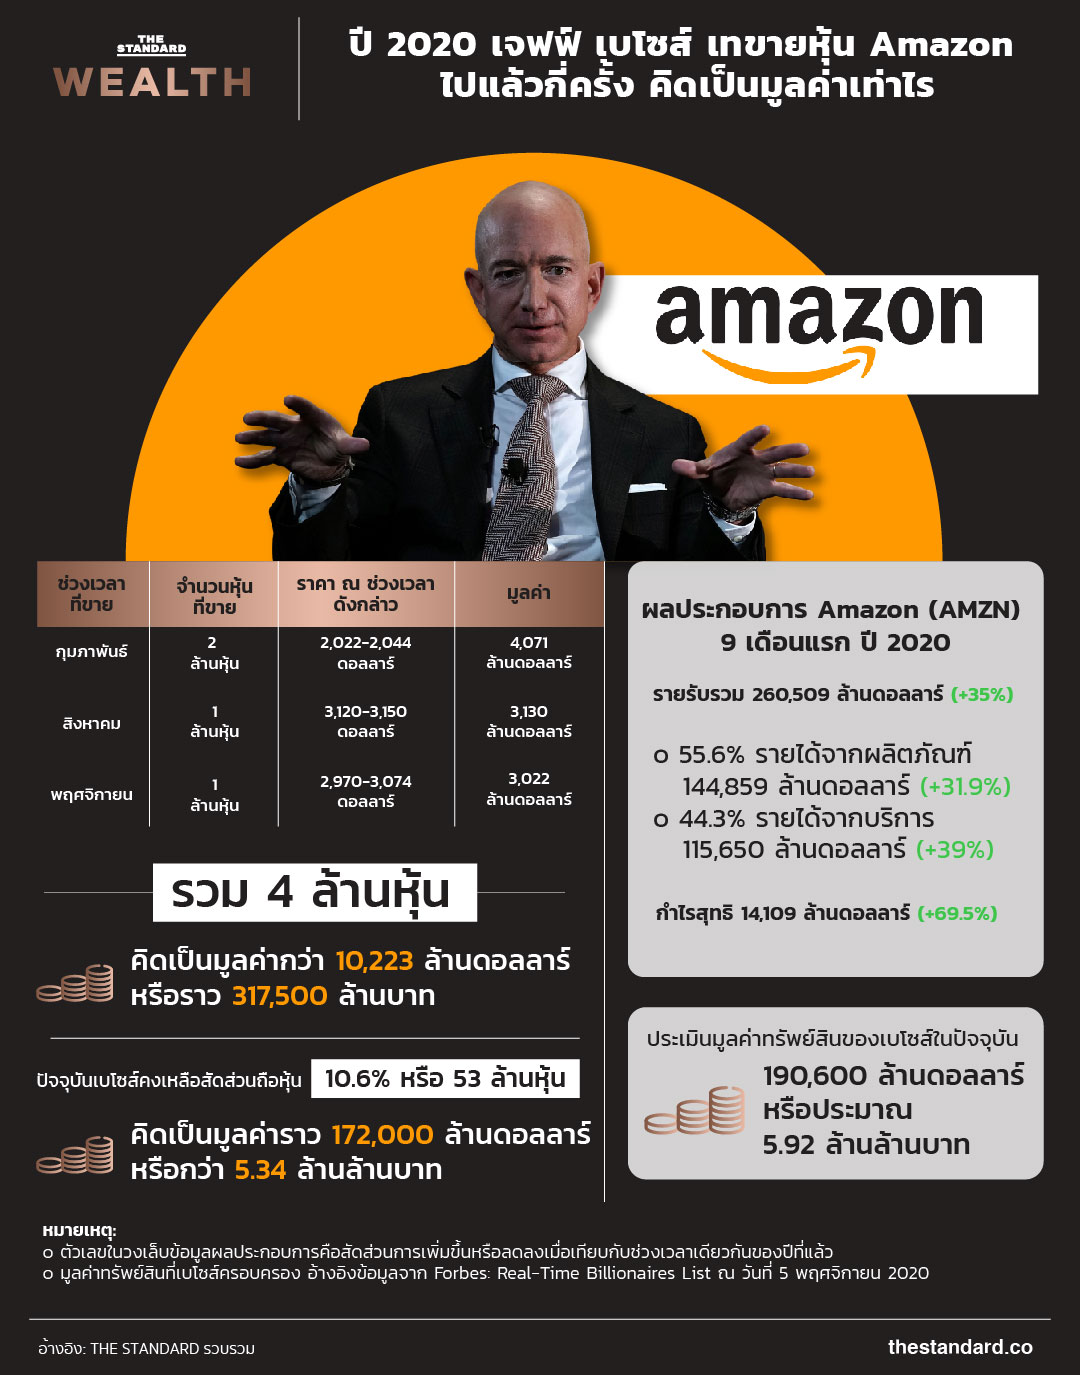 ปี 2020 เจฟฟ์ เบโซส์ เทขายหุ้น Amazon ไปแล้วกี่ครั้ง คิดเป็นมูลค่าเท่าไร